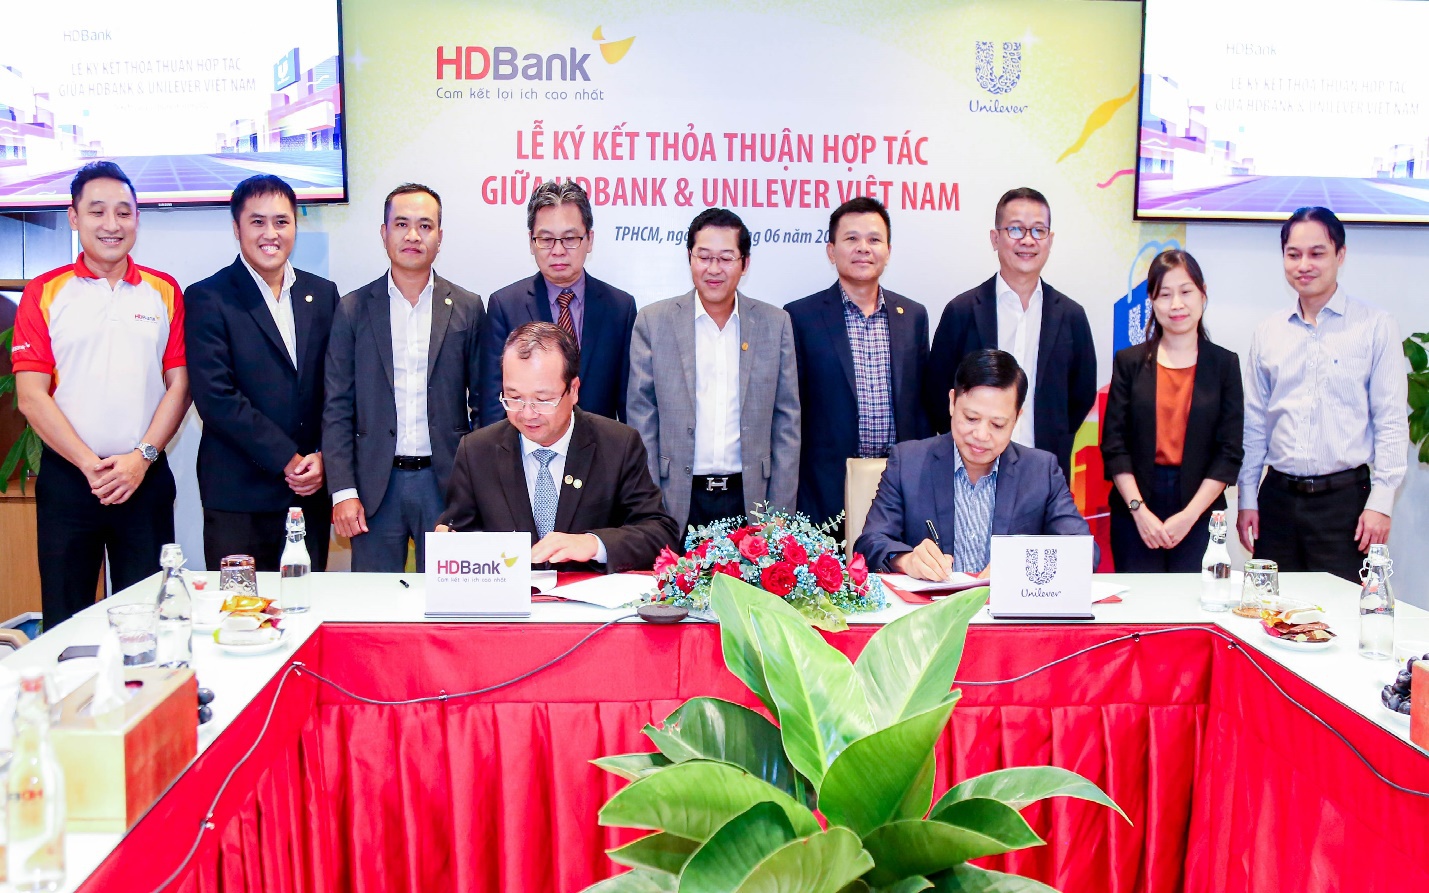 HDBank và Unilever Việt Nam hợp tác, nâng cao lợi ích cho doanh nghiệp